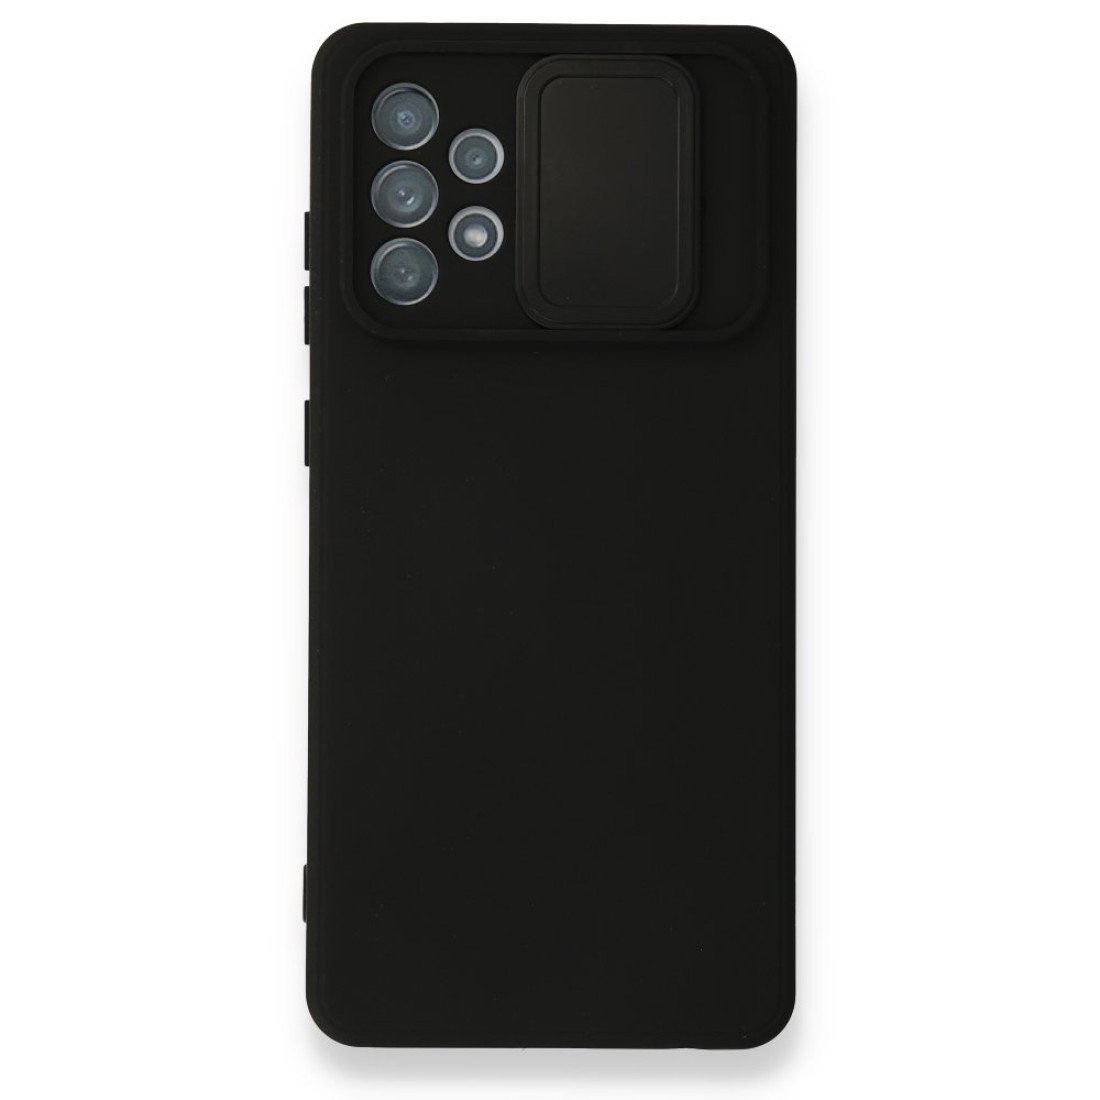 Samsung Galaxy A52 Kılıf Color Lens Silikon - Siyah